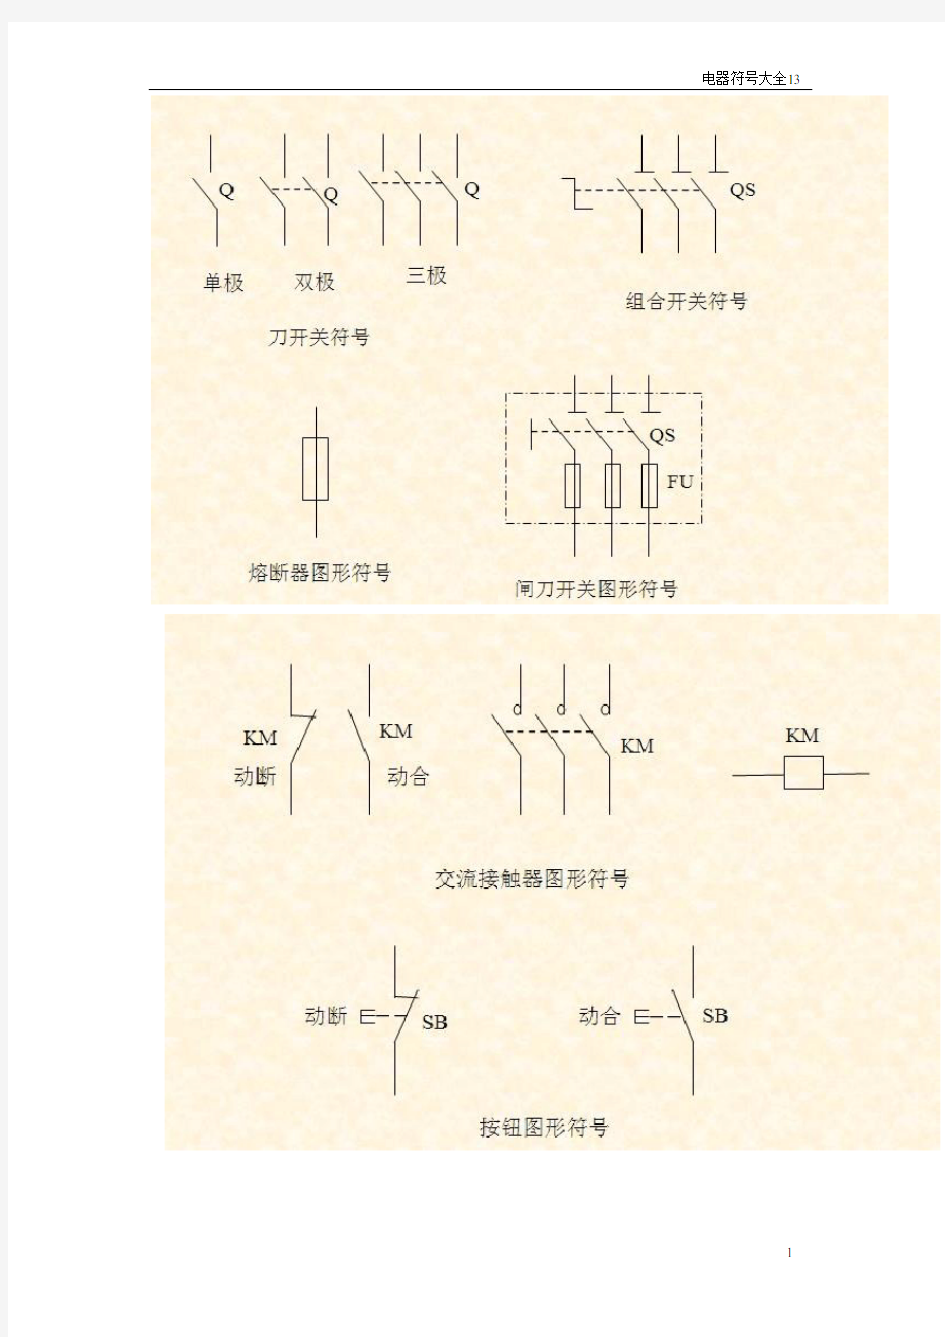 电气图形符号大全 (1)讲解